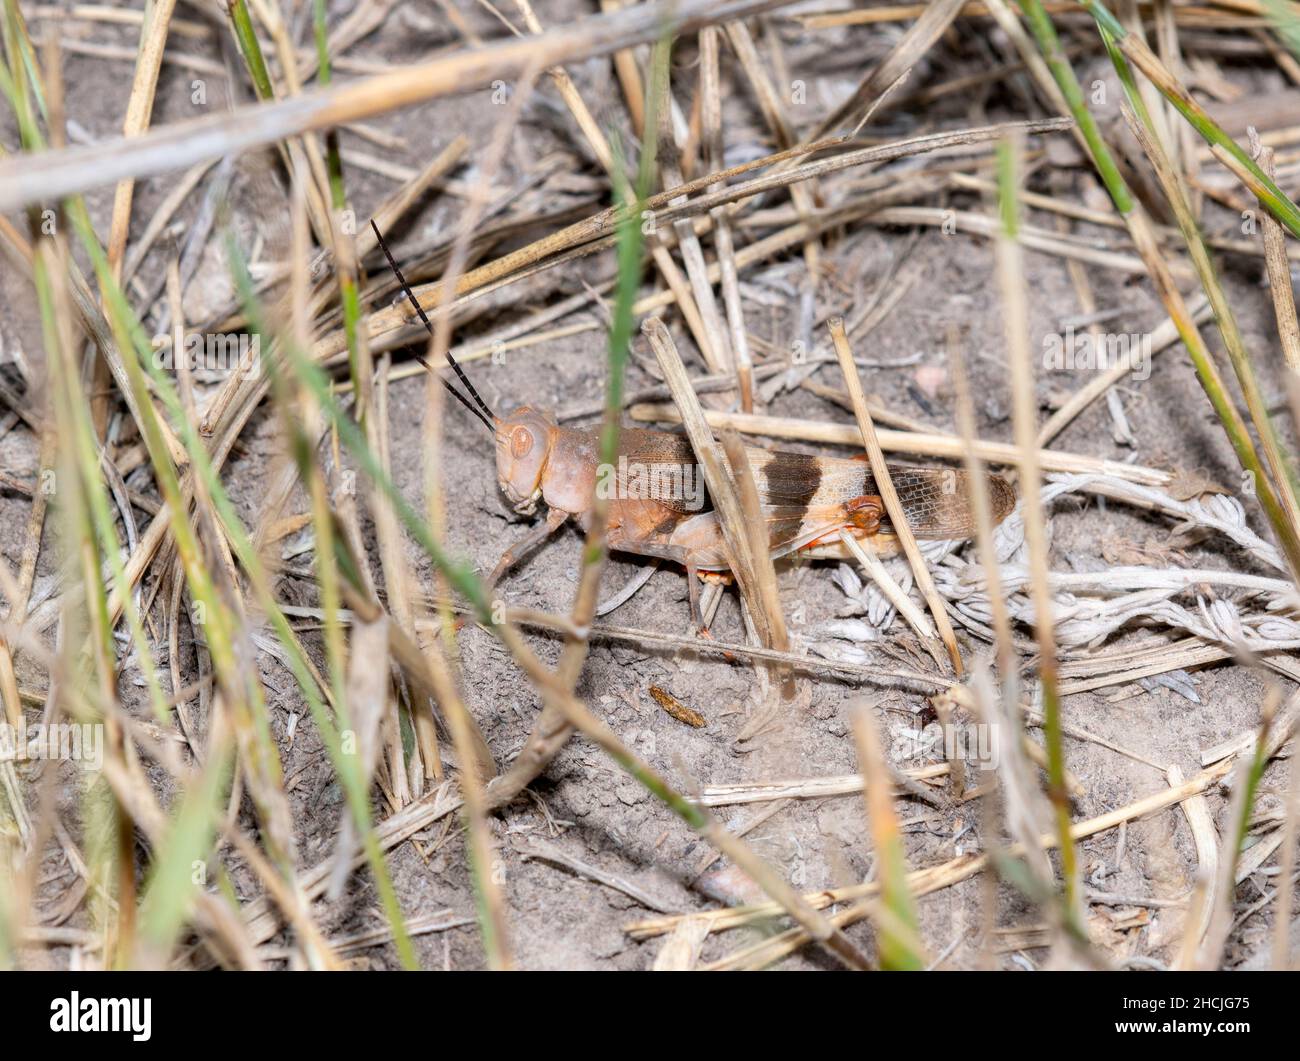 A Say's Grasshopper (Spharagemon ecale) encaramado en el suelo con tierra y vegetación seca Foto de stock